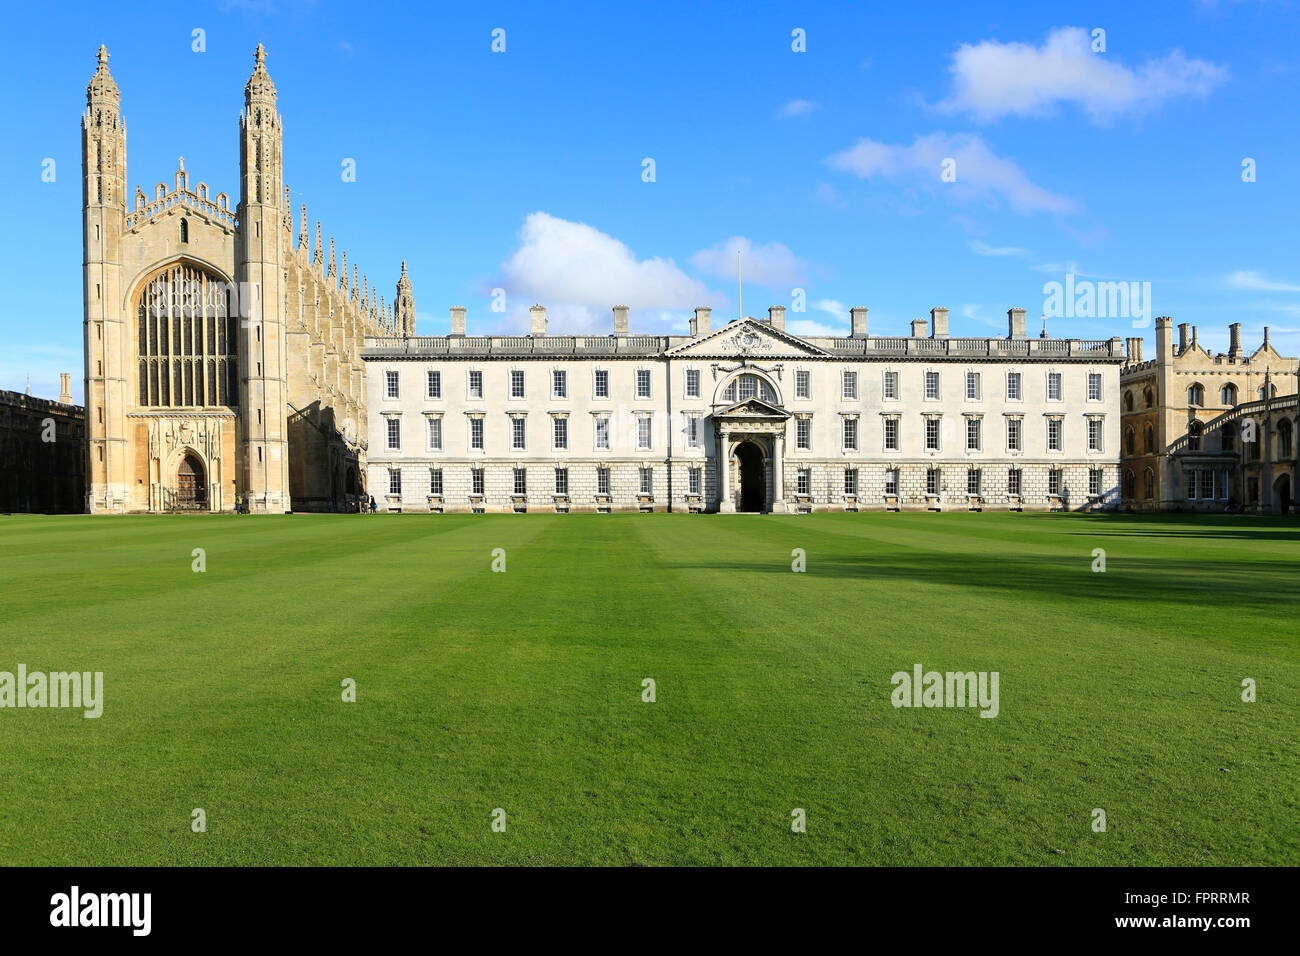 Royaume-Uni, Cambridge, Université de Cambridge, Kings College montrant la célèbre chapelle gothique et le bâtiment James Gibbs, depuis la rivière Cam Banque D'Images